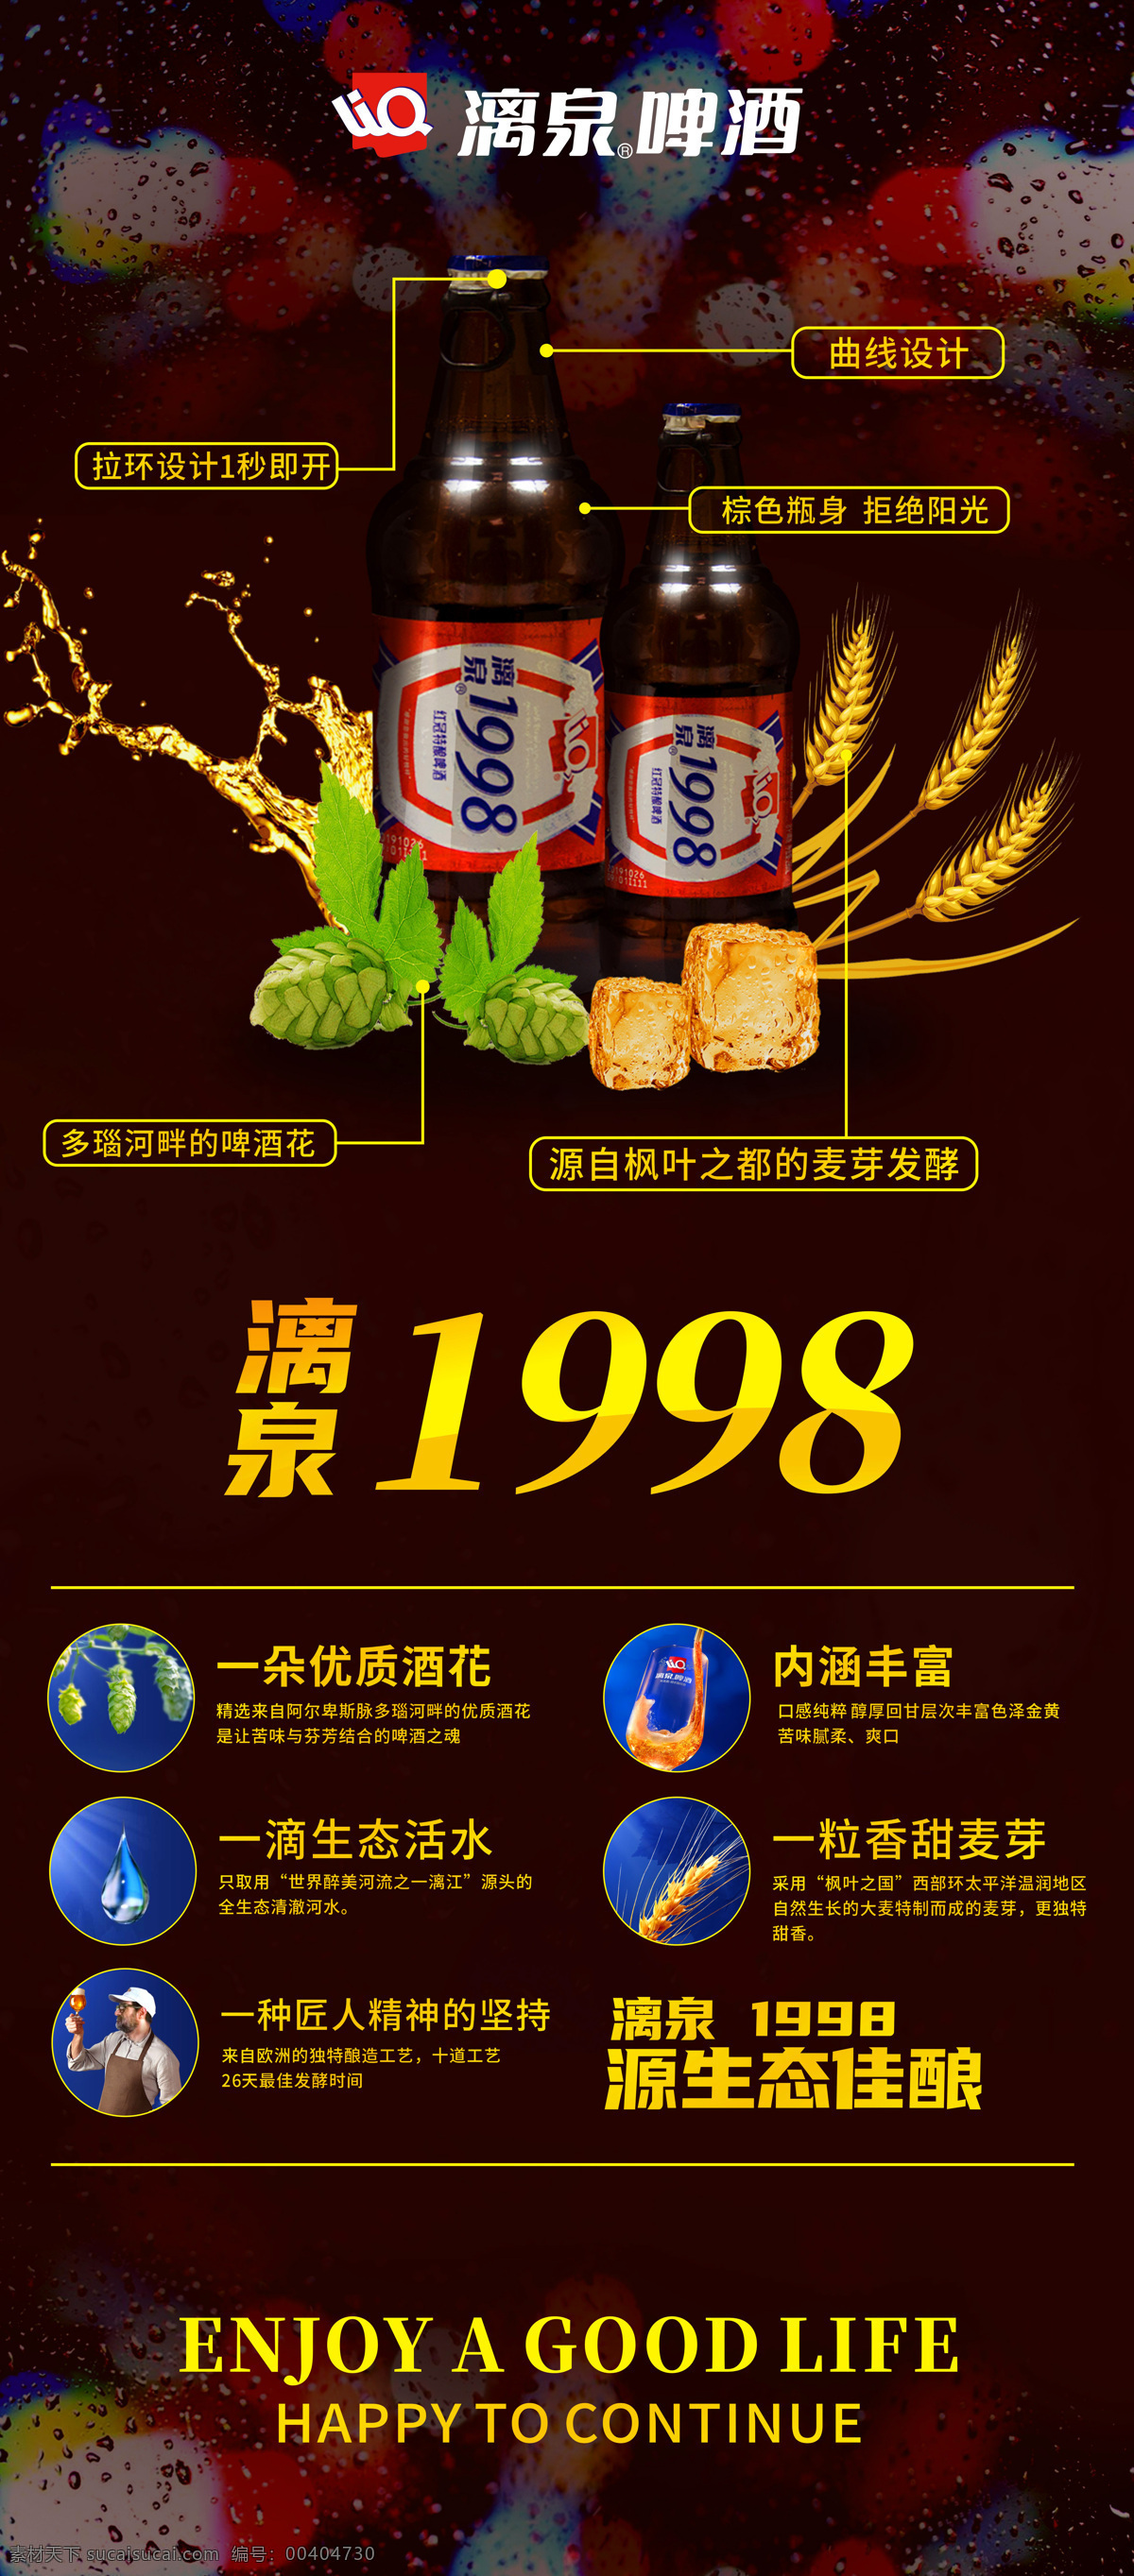 漓泉啤酒 漓泉1998 啤酒 展架 1998 啤酒海报